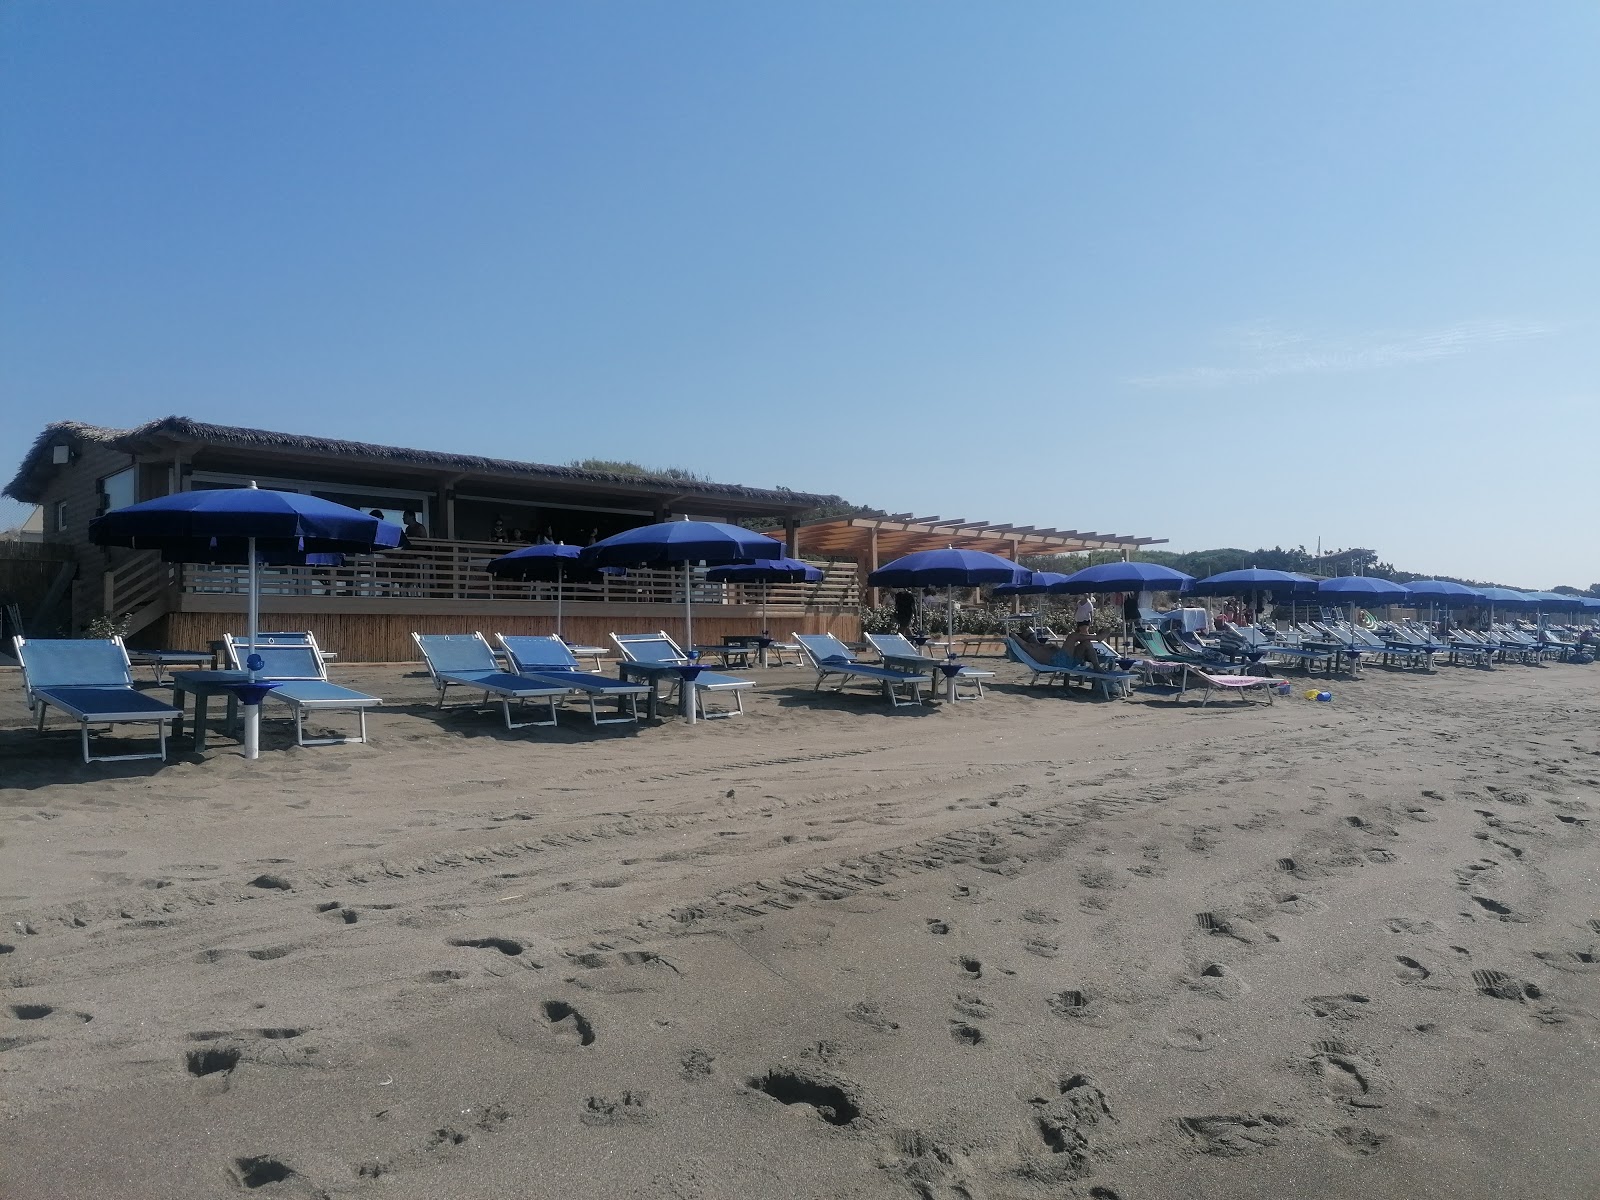 Zdjęcie Spiaggia Capalbio położony w naturalnym obszarze